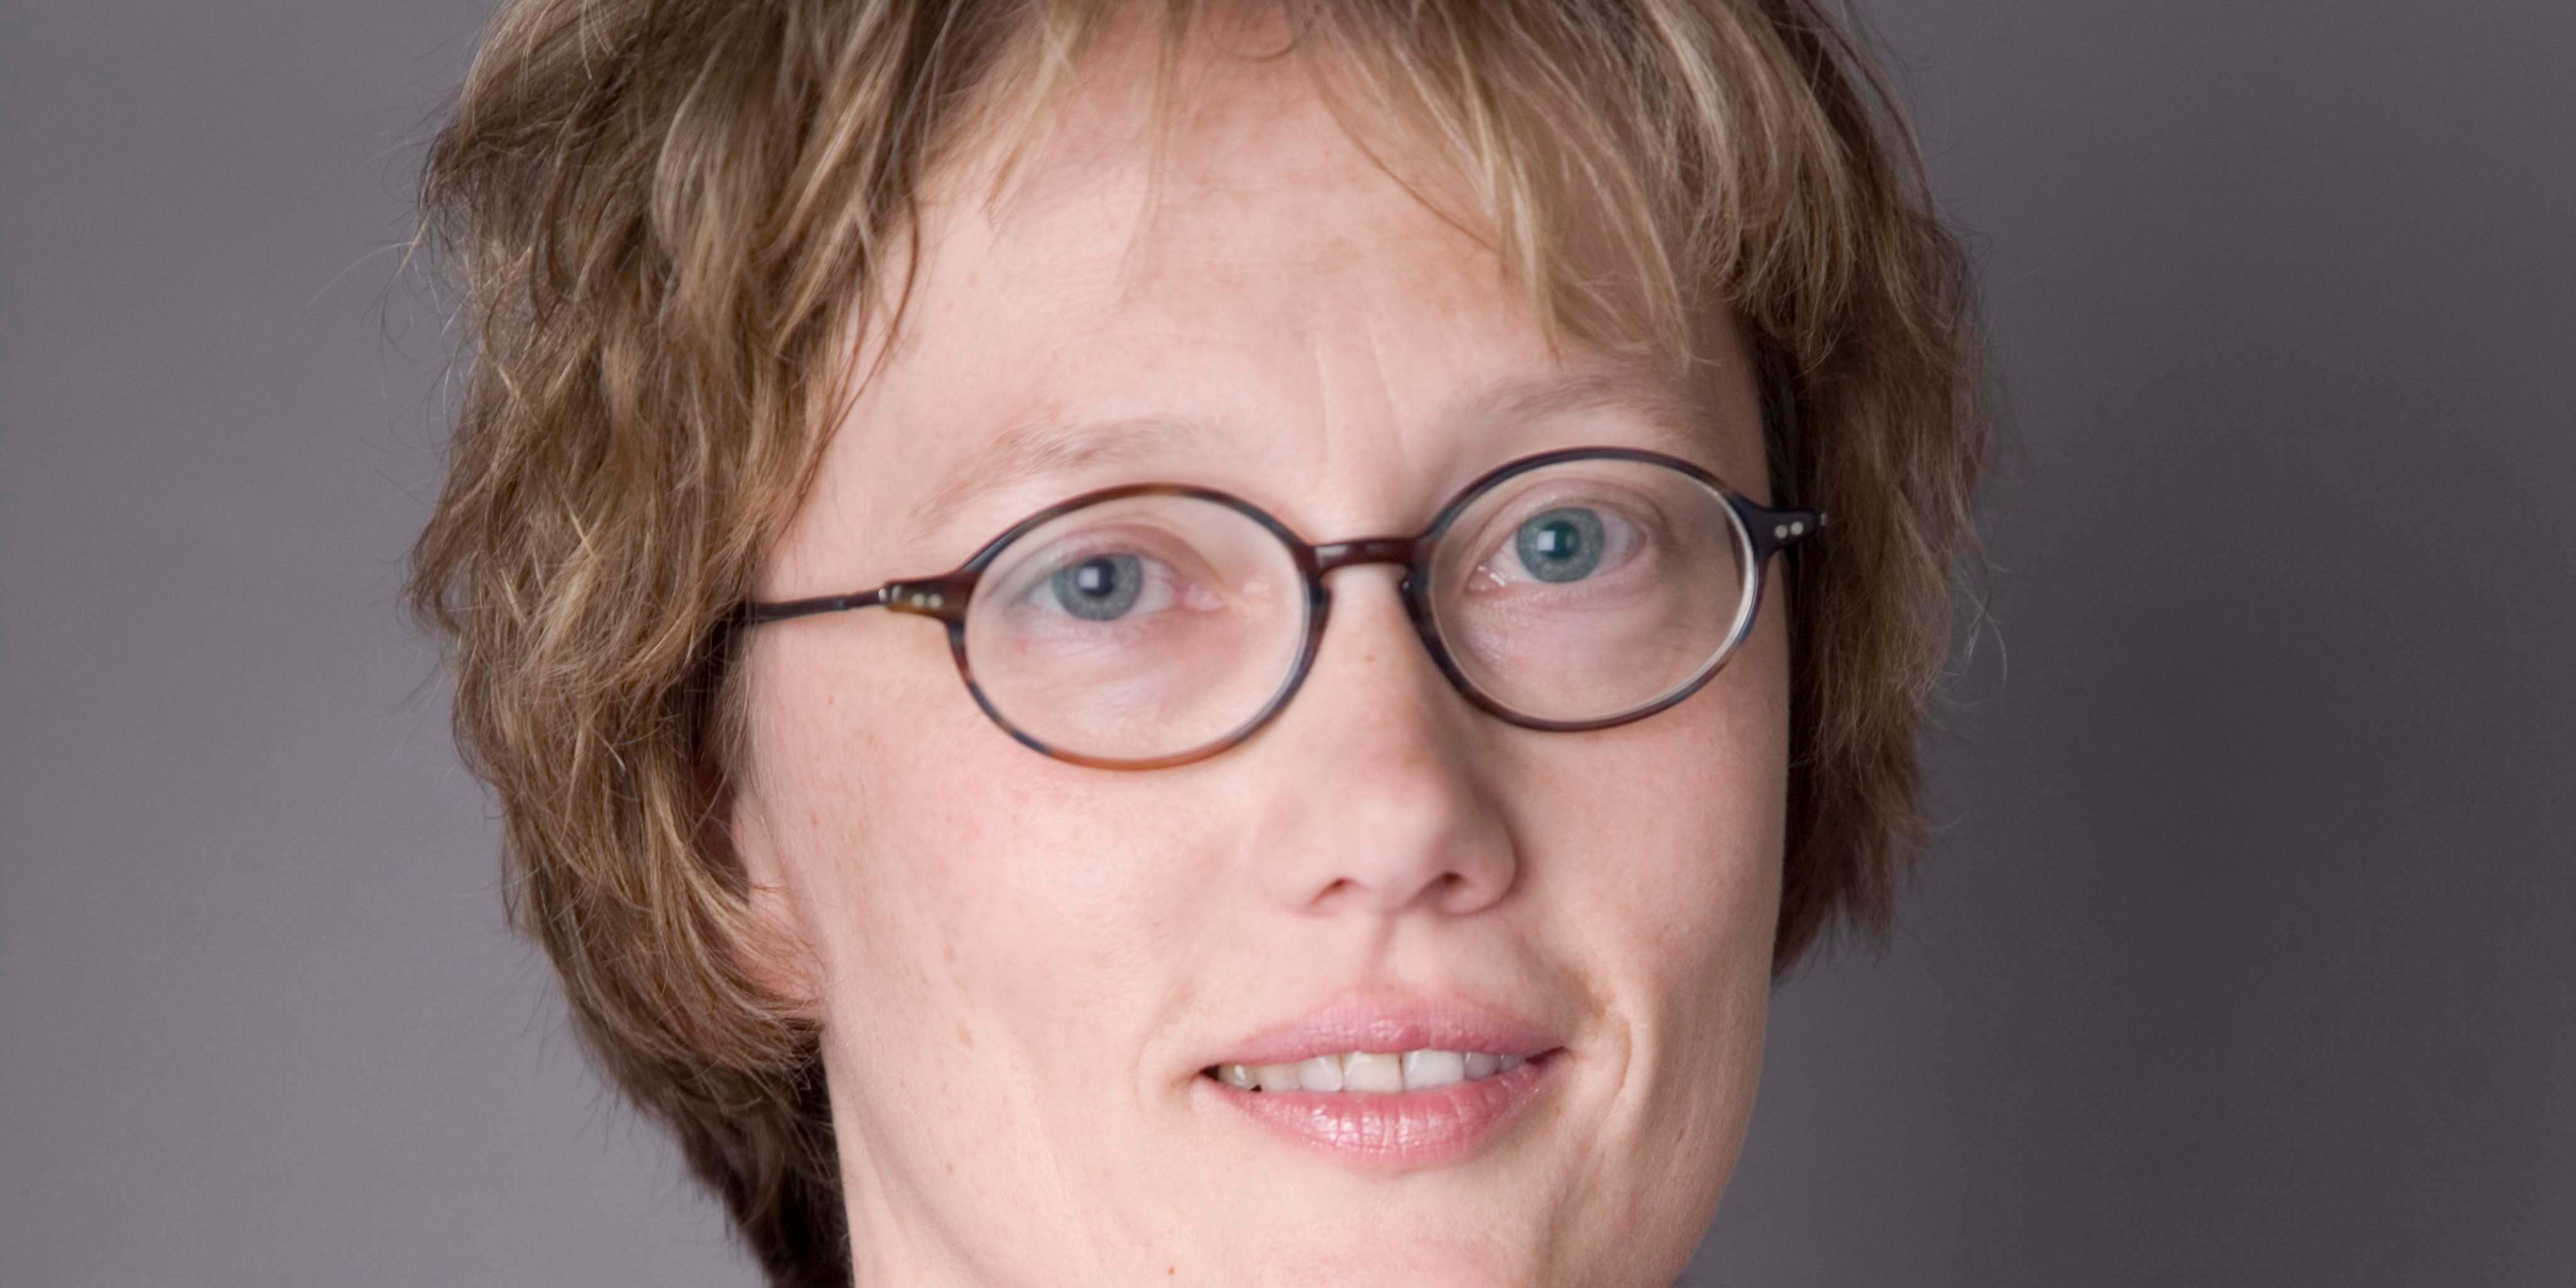 Prof. Dr. Heike Bungert